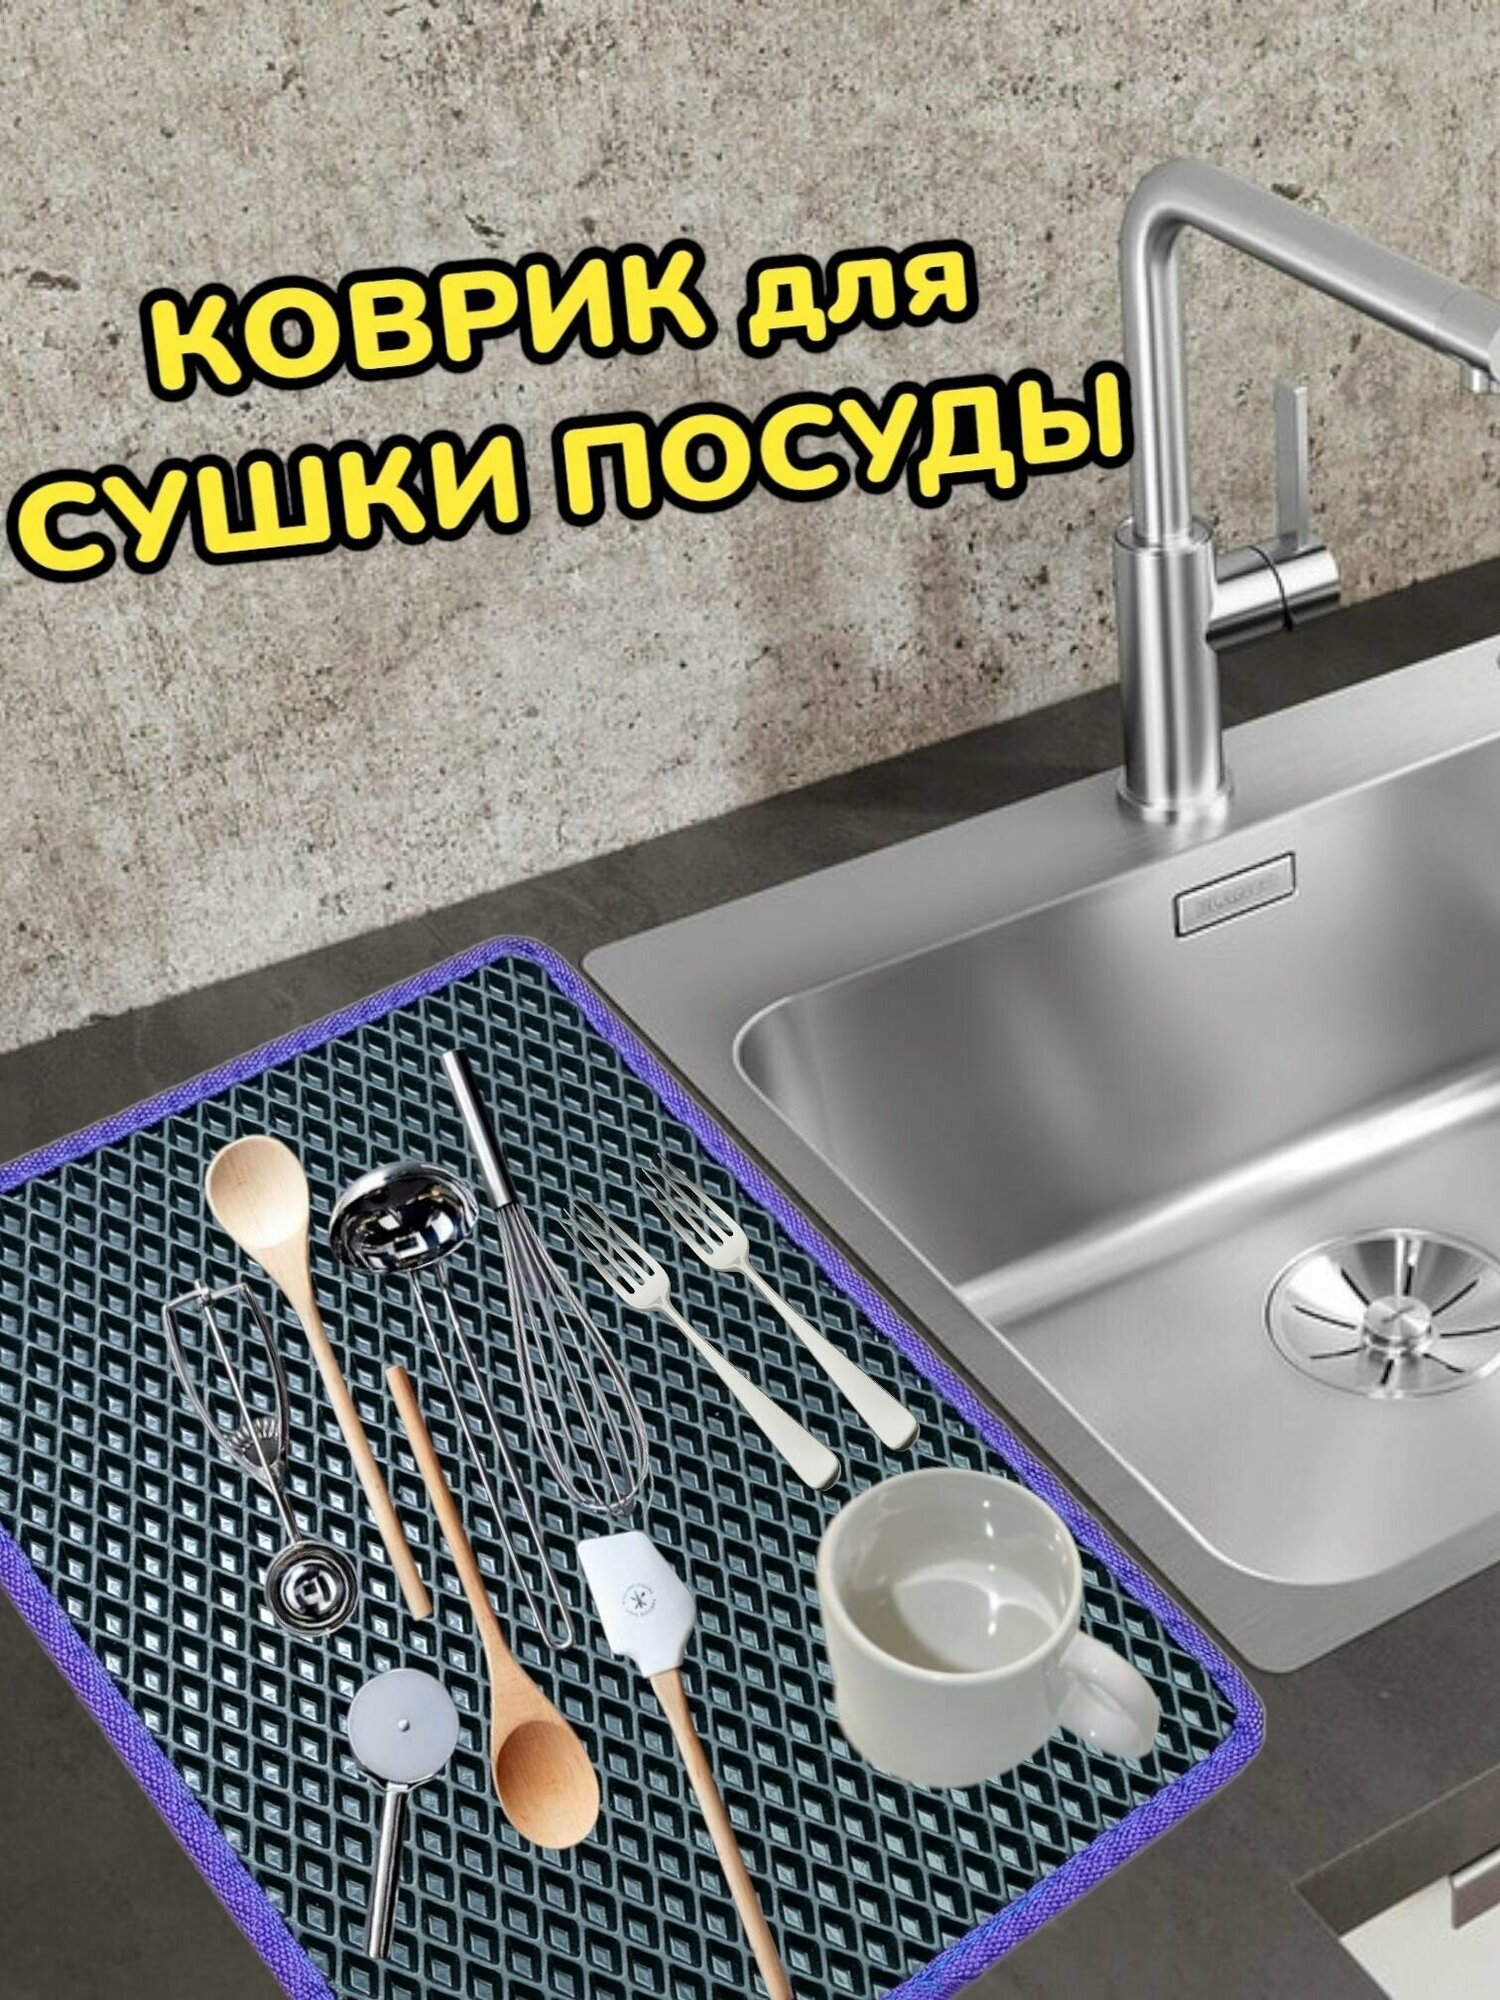 Коврик для сушки посуды / Поддон для сушилки посуды / 55 см х 30 см х 1 см / Черный с фиолетовым кантом